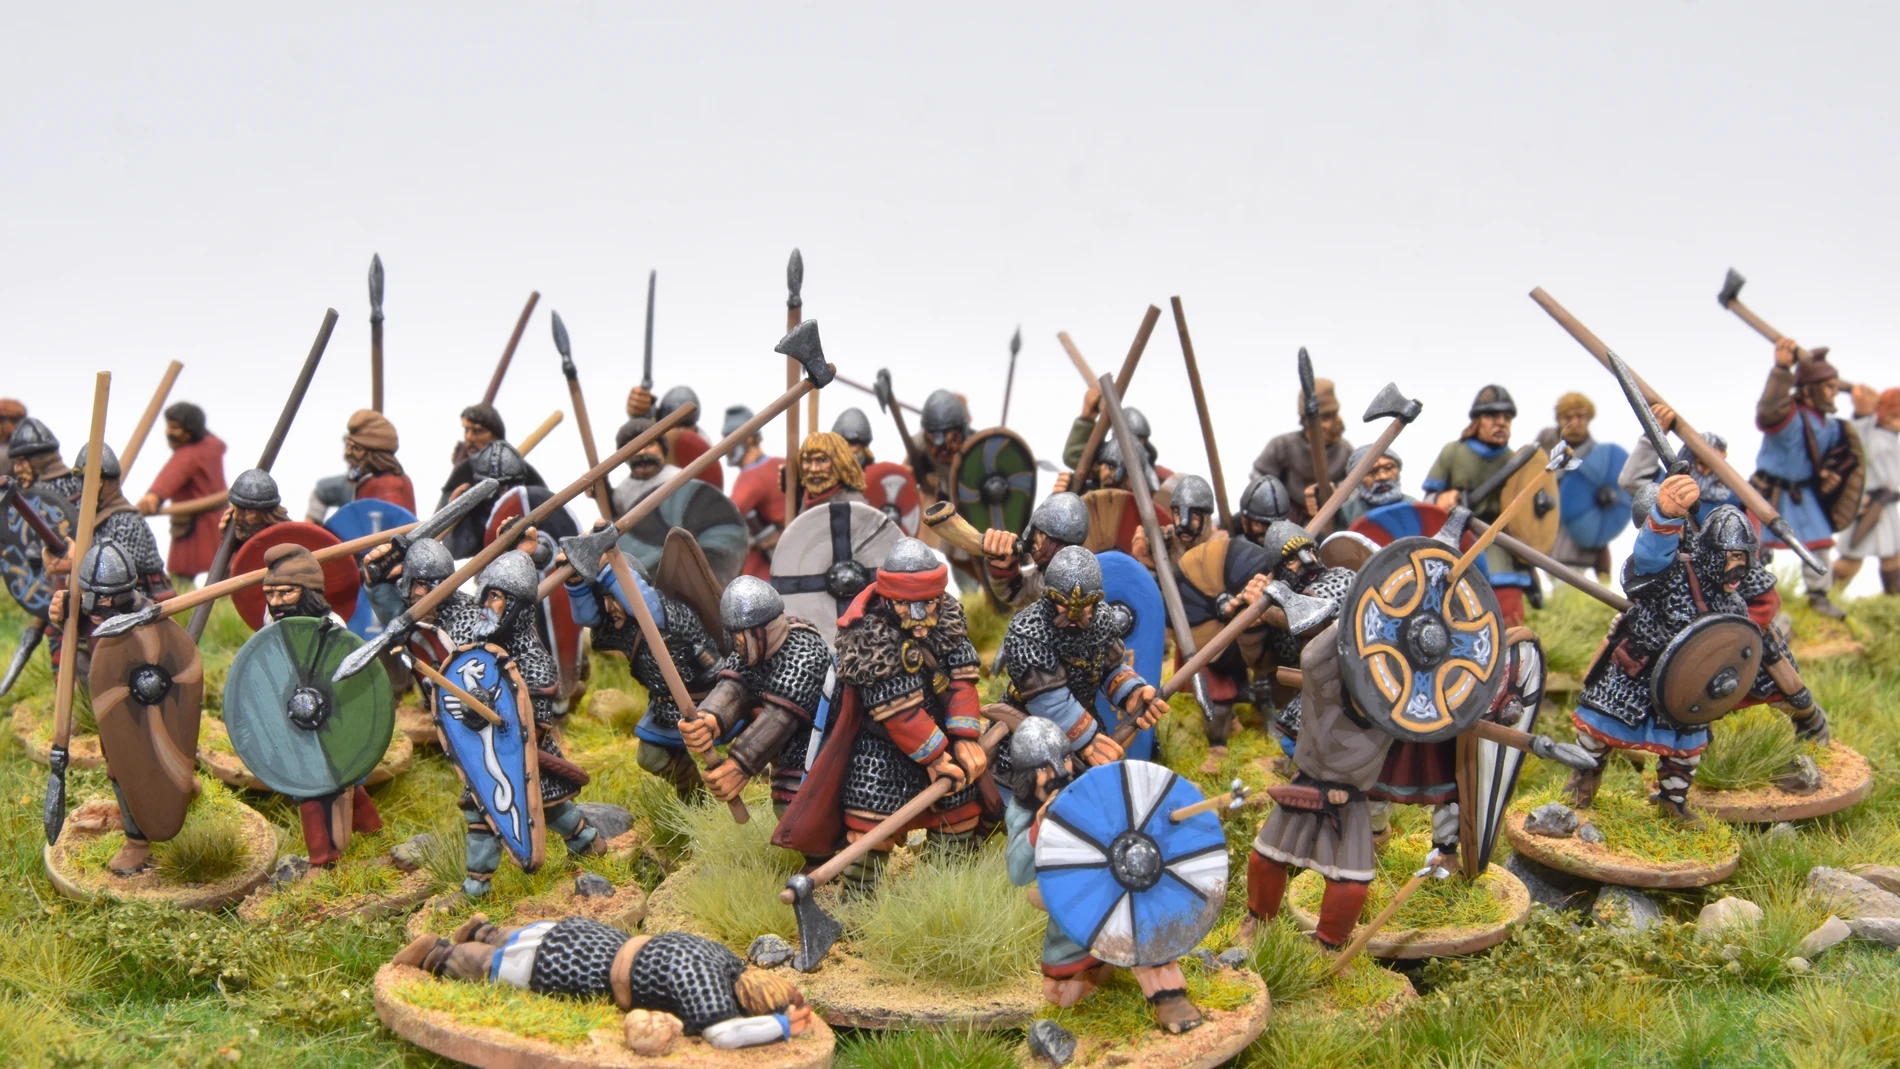 Haroldo Godwinson (en el centro), en la batalla de Hastings. Miniaturas de 28 mm. de Gripping Beast pintadas por Javier Gómez "El Mercenario"